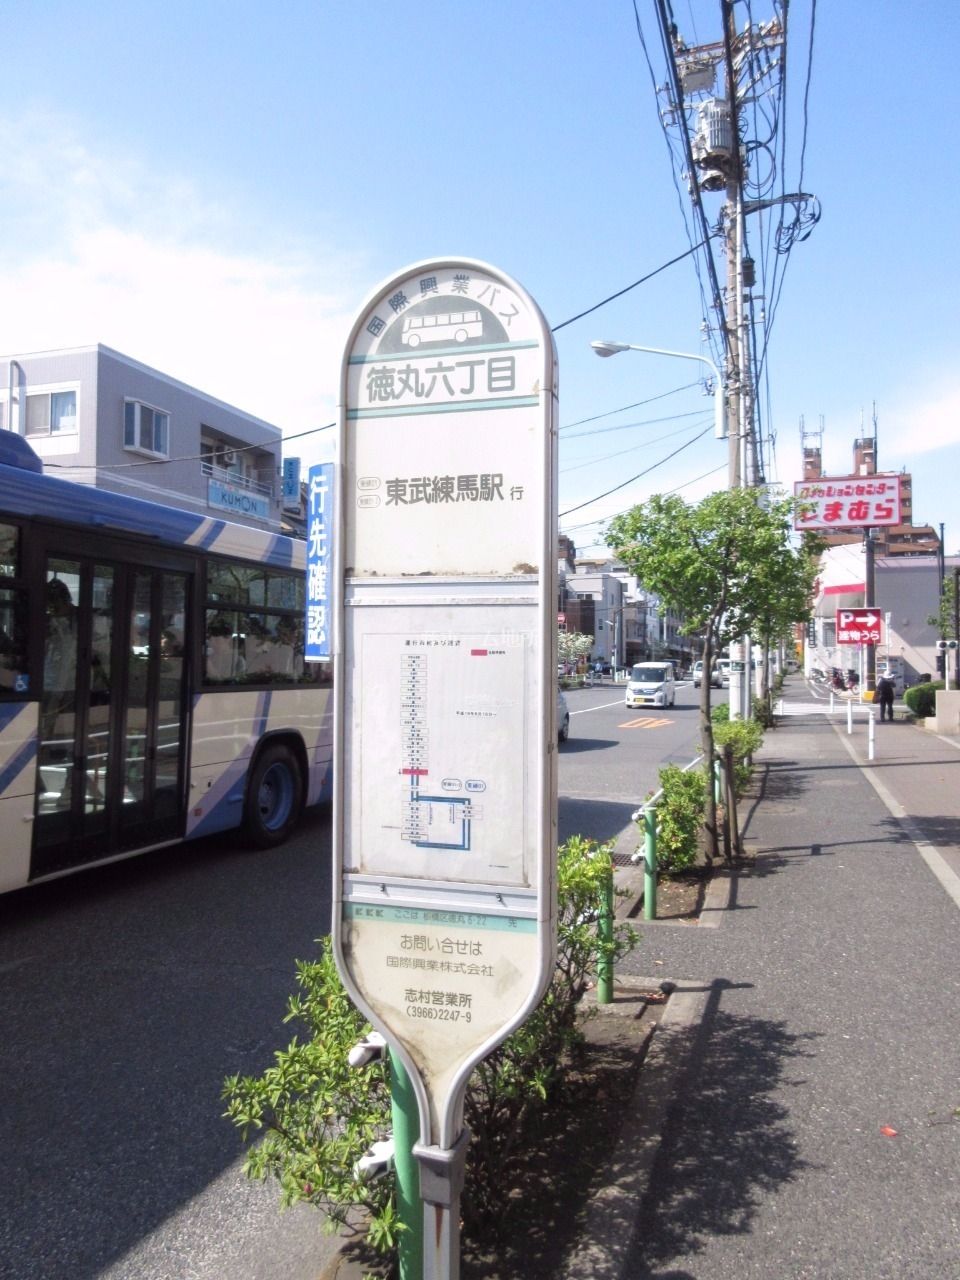 歩いて1分（90ｍ）、東武東上線「東武練馬駅」、都営三田線「高島平駅」、JR埼京線「浮間舟渡駅」に行けます